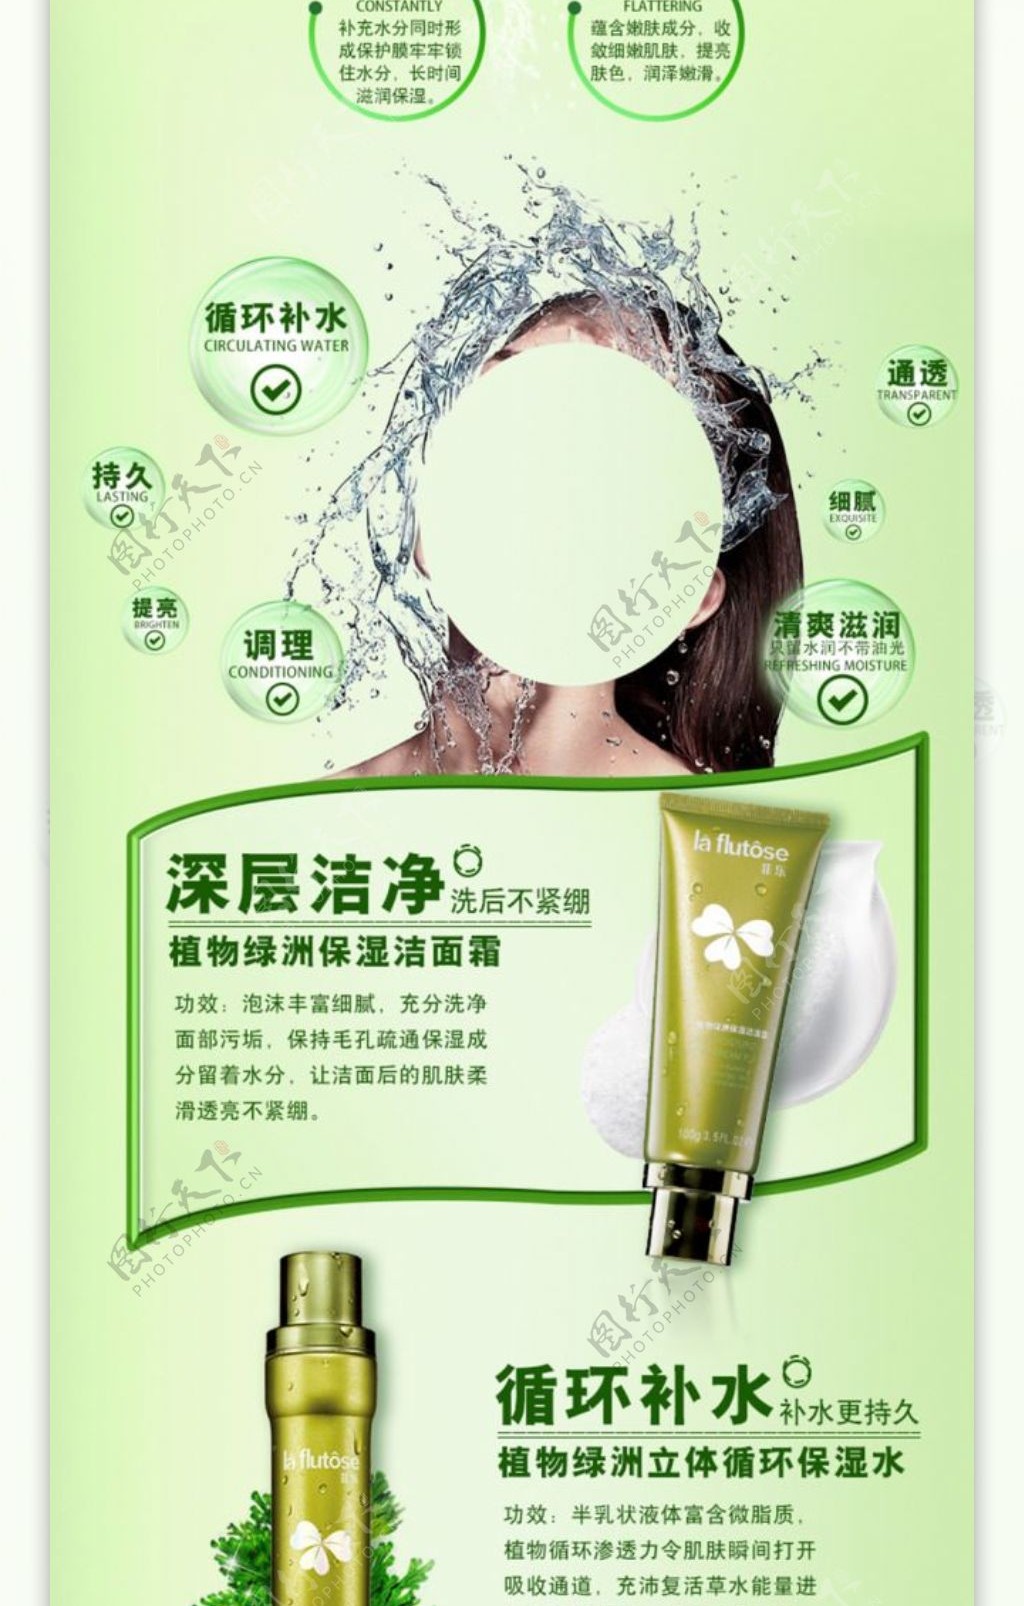 天猫京东淘宝高端植物系列护肤品化妆品详情页